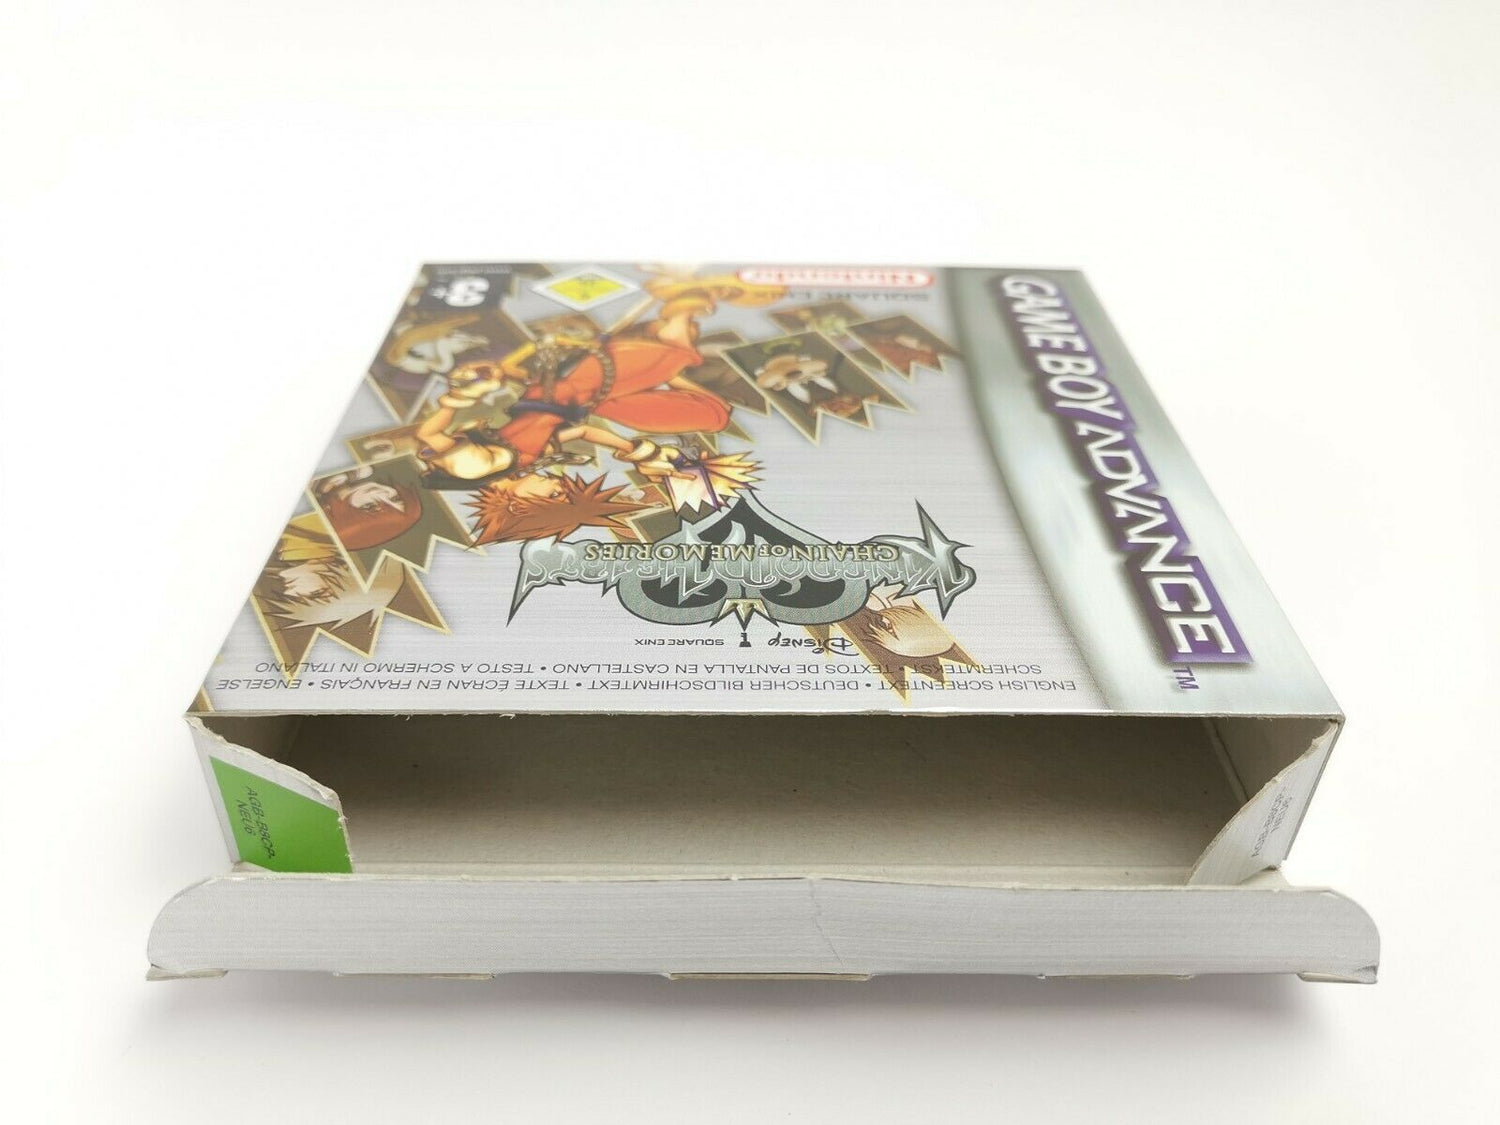 Nintendo Gameboy Advance Spiel 